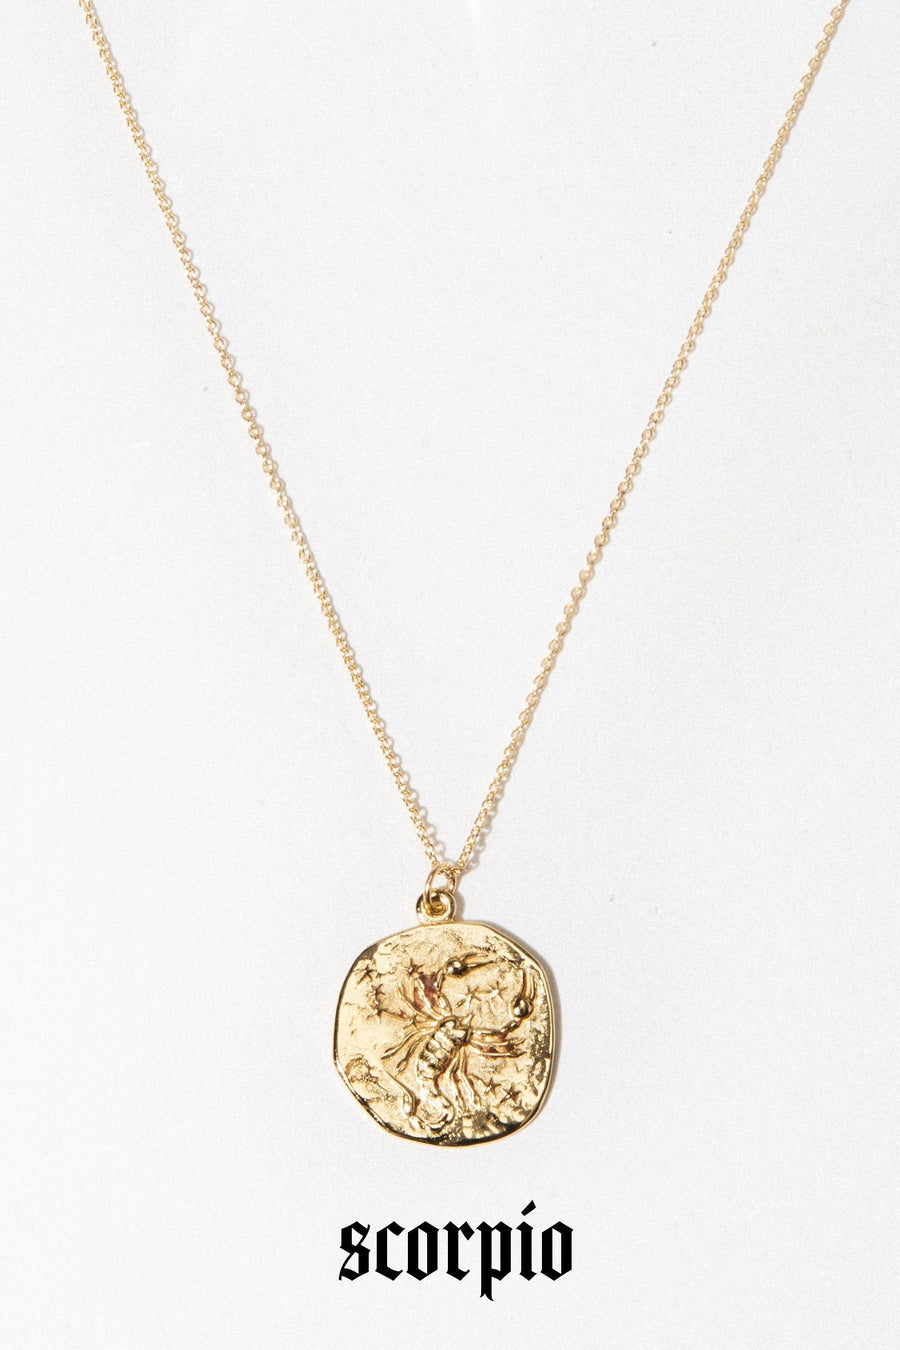 Studio Grun Jewelry Scorpio / Gold / 20 inches Zodiac Necklace